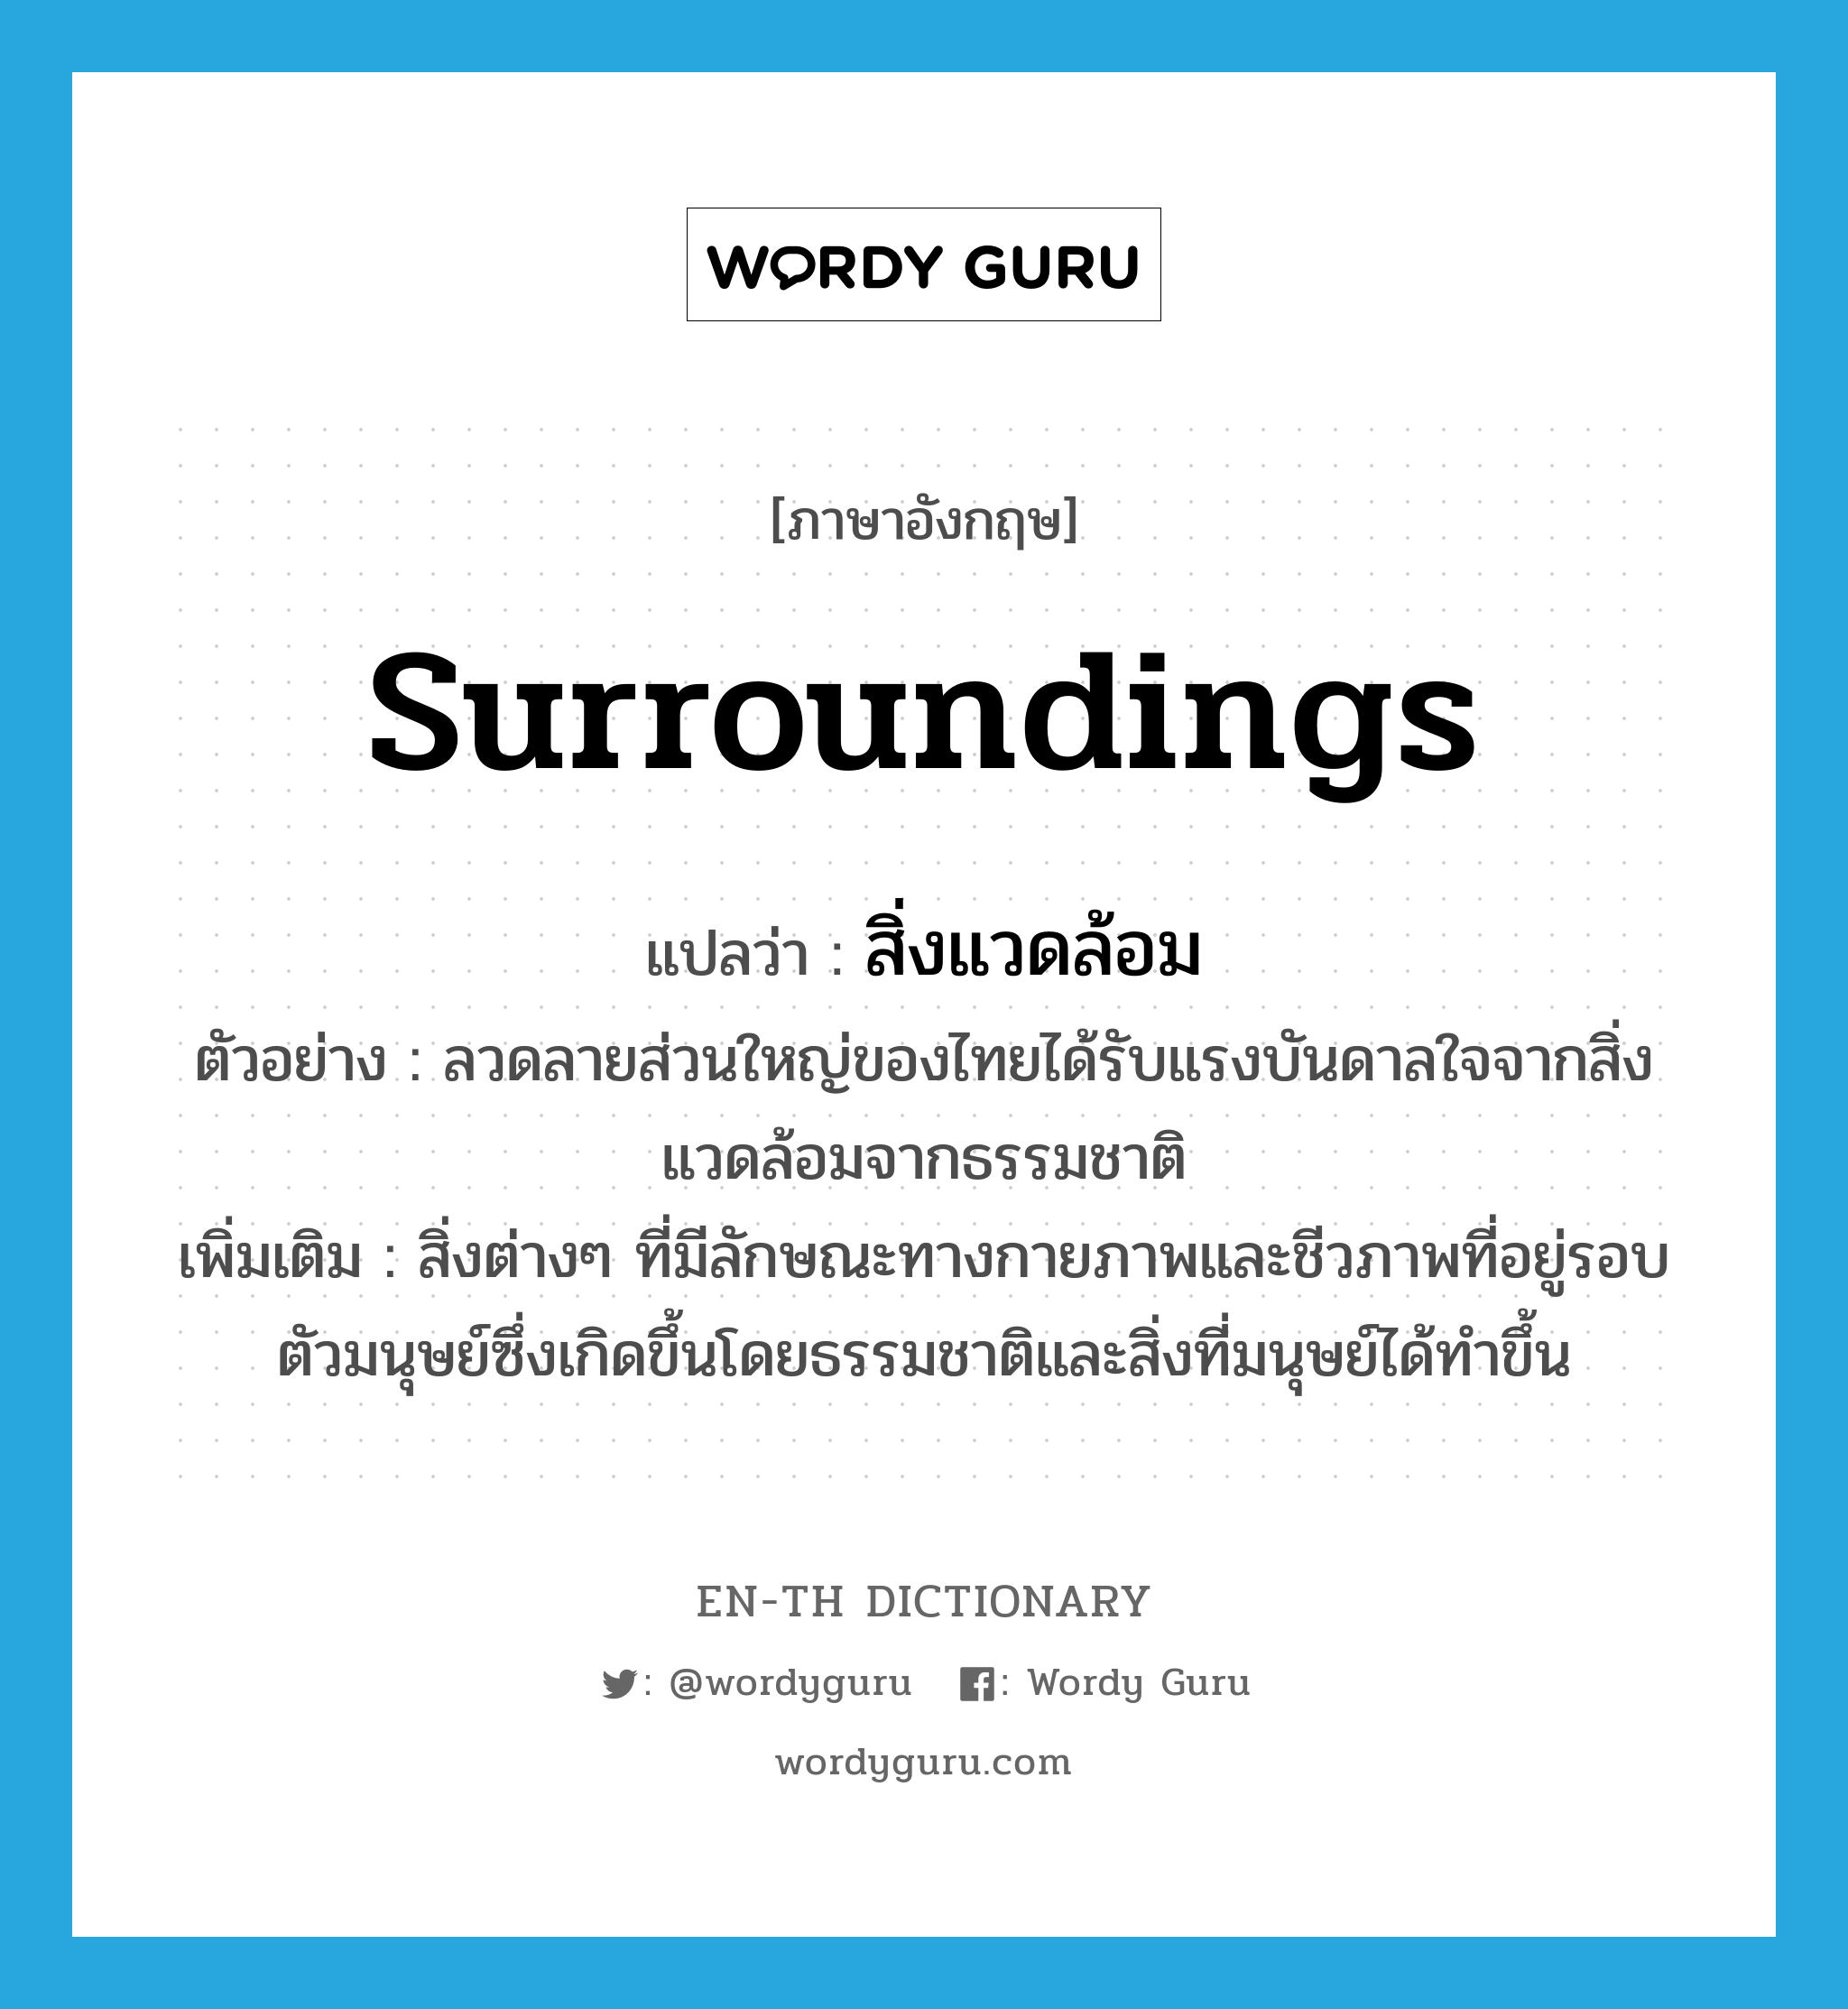 surroundings แปลว่า?, คำศัพท์ภาษาอังกฤษ surroundings แปลว่า สิ่งแวดล้อม ประเภท N ตัวอย่าง ลวดลายส่วนใหญ่ของไทยได้รับแรงบันดาลใจจากสิ่งแวดล้อมจากธรรมชาติ เพิ่มเติม สิ่งต่างๆ ที่มีลักษณะทางกายภาพและชีวภาพที่อยู่รอบตัวมนุษย์ซึ่งเกิดขึ้นโดยธรรมชาติและสิ่งที่มนุษย์ได้ทำขึ้น หมวด N